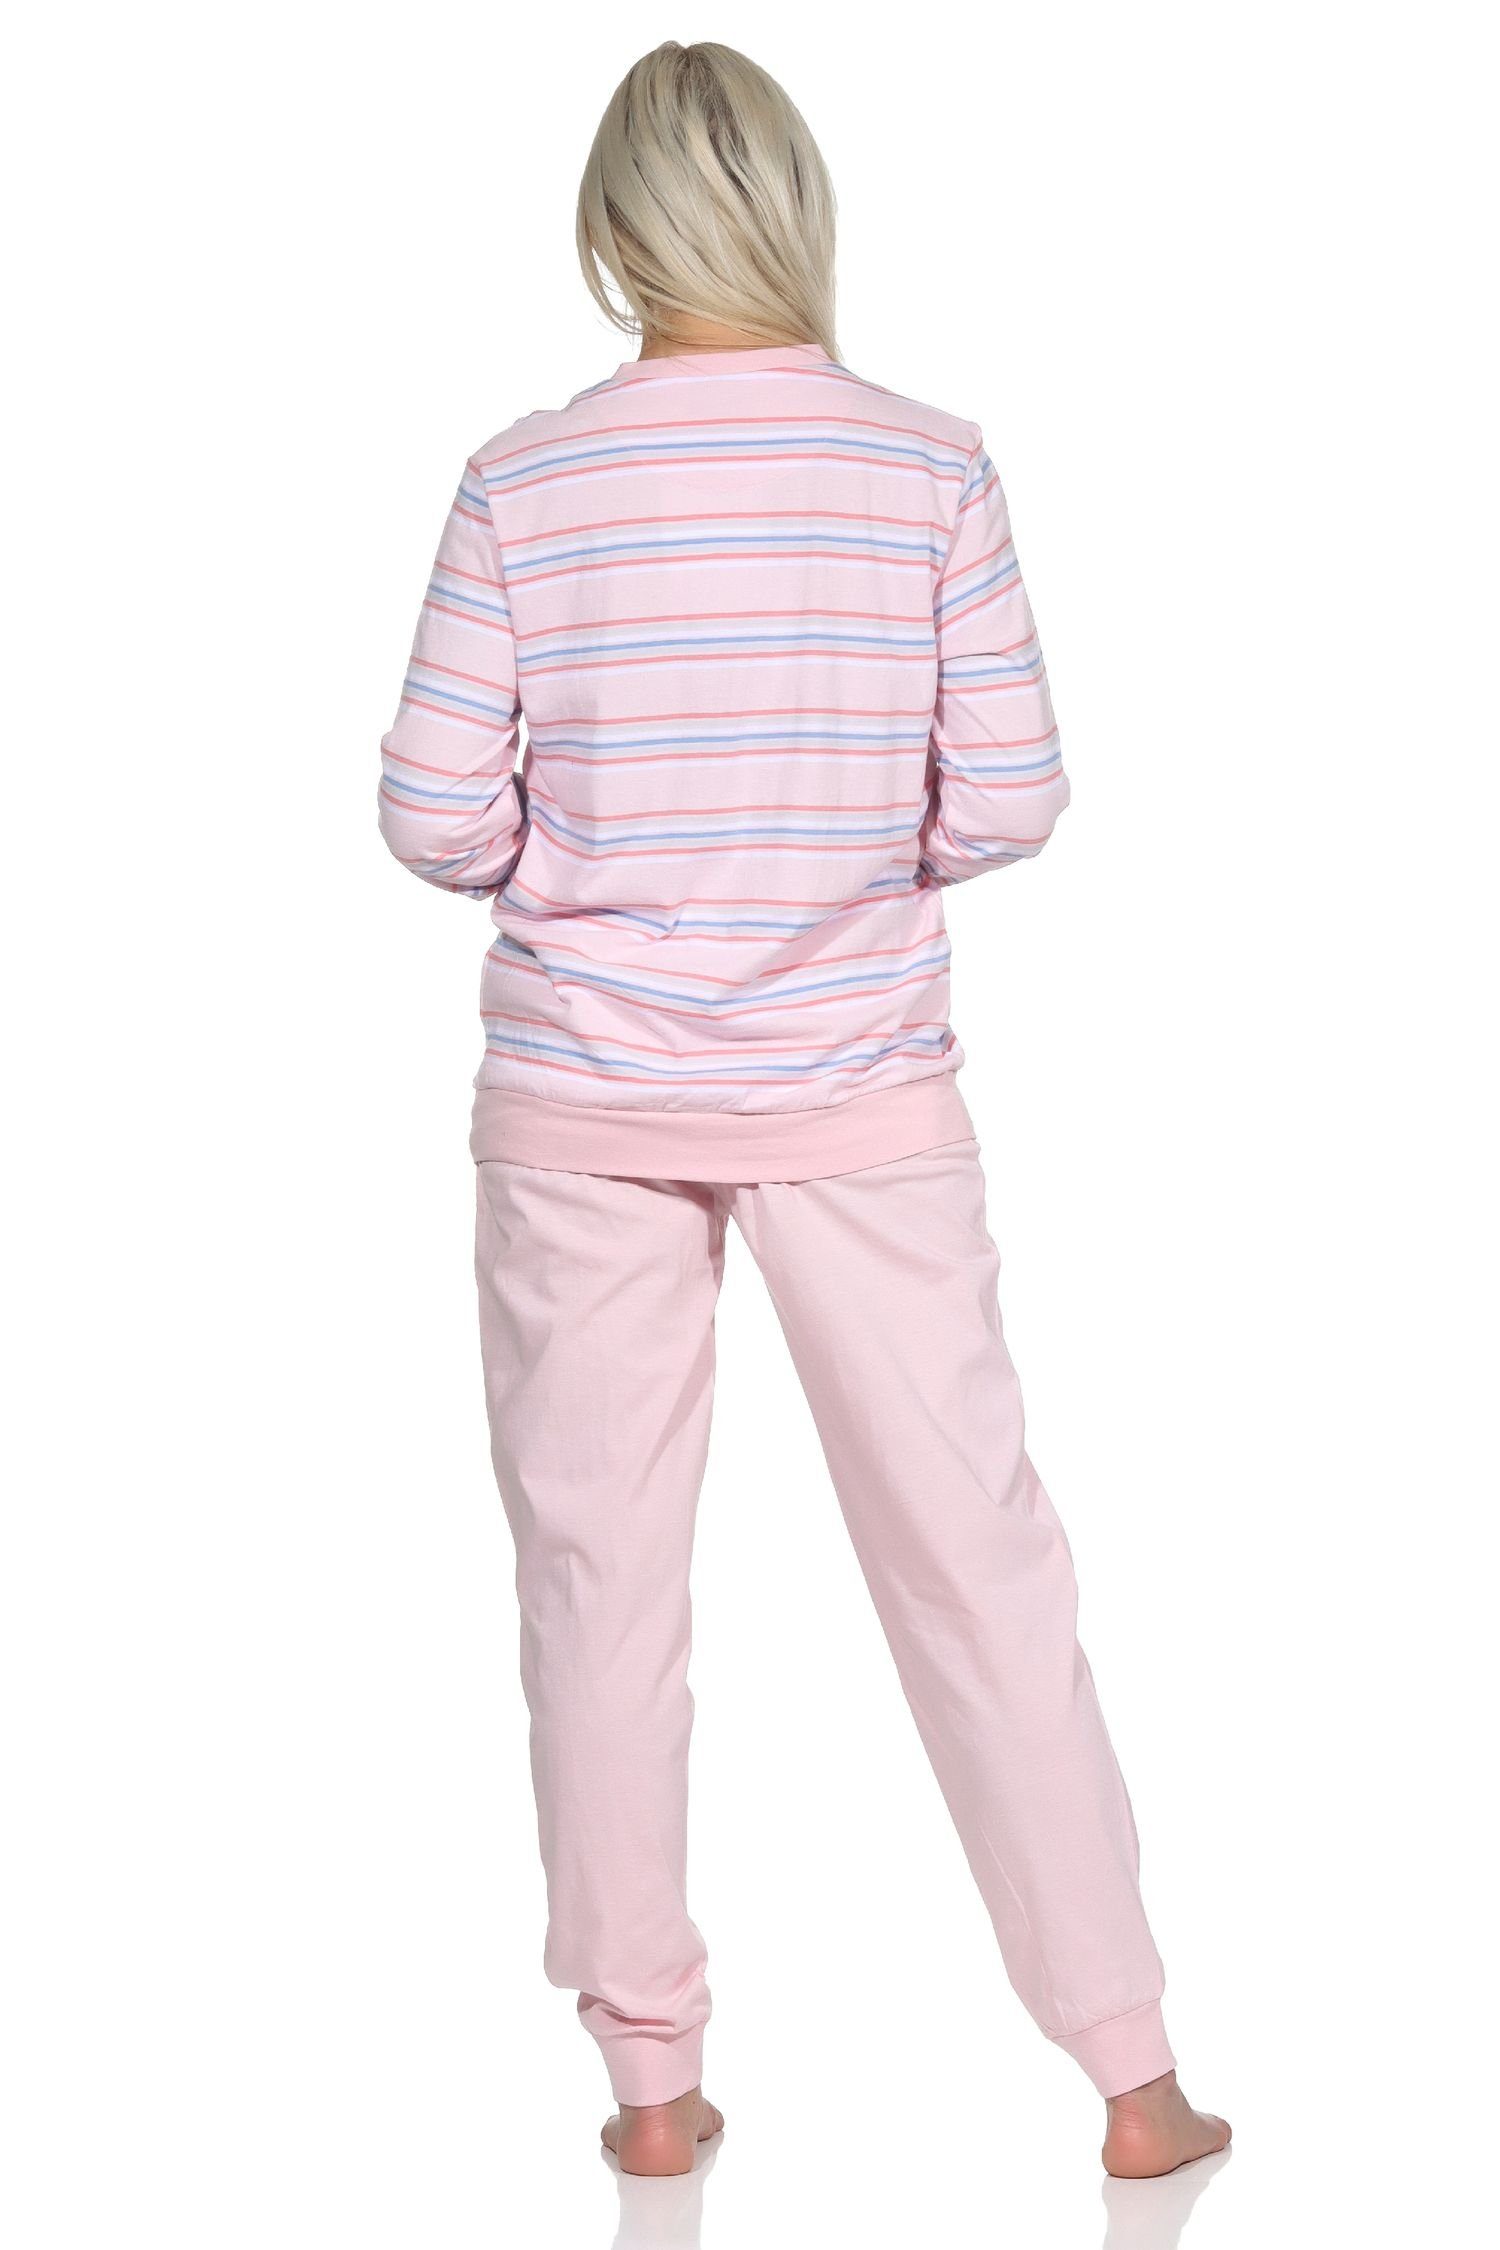 langarm Pyjama Schlafanzug Normann mit Damen Bündchen pastellfarbenen Look rosa Pyjama in